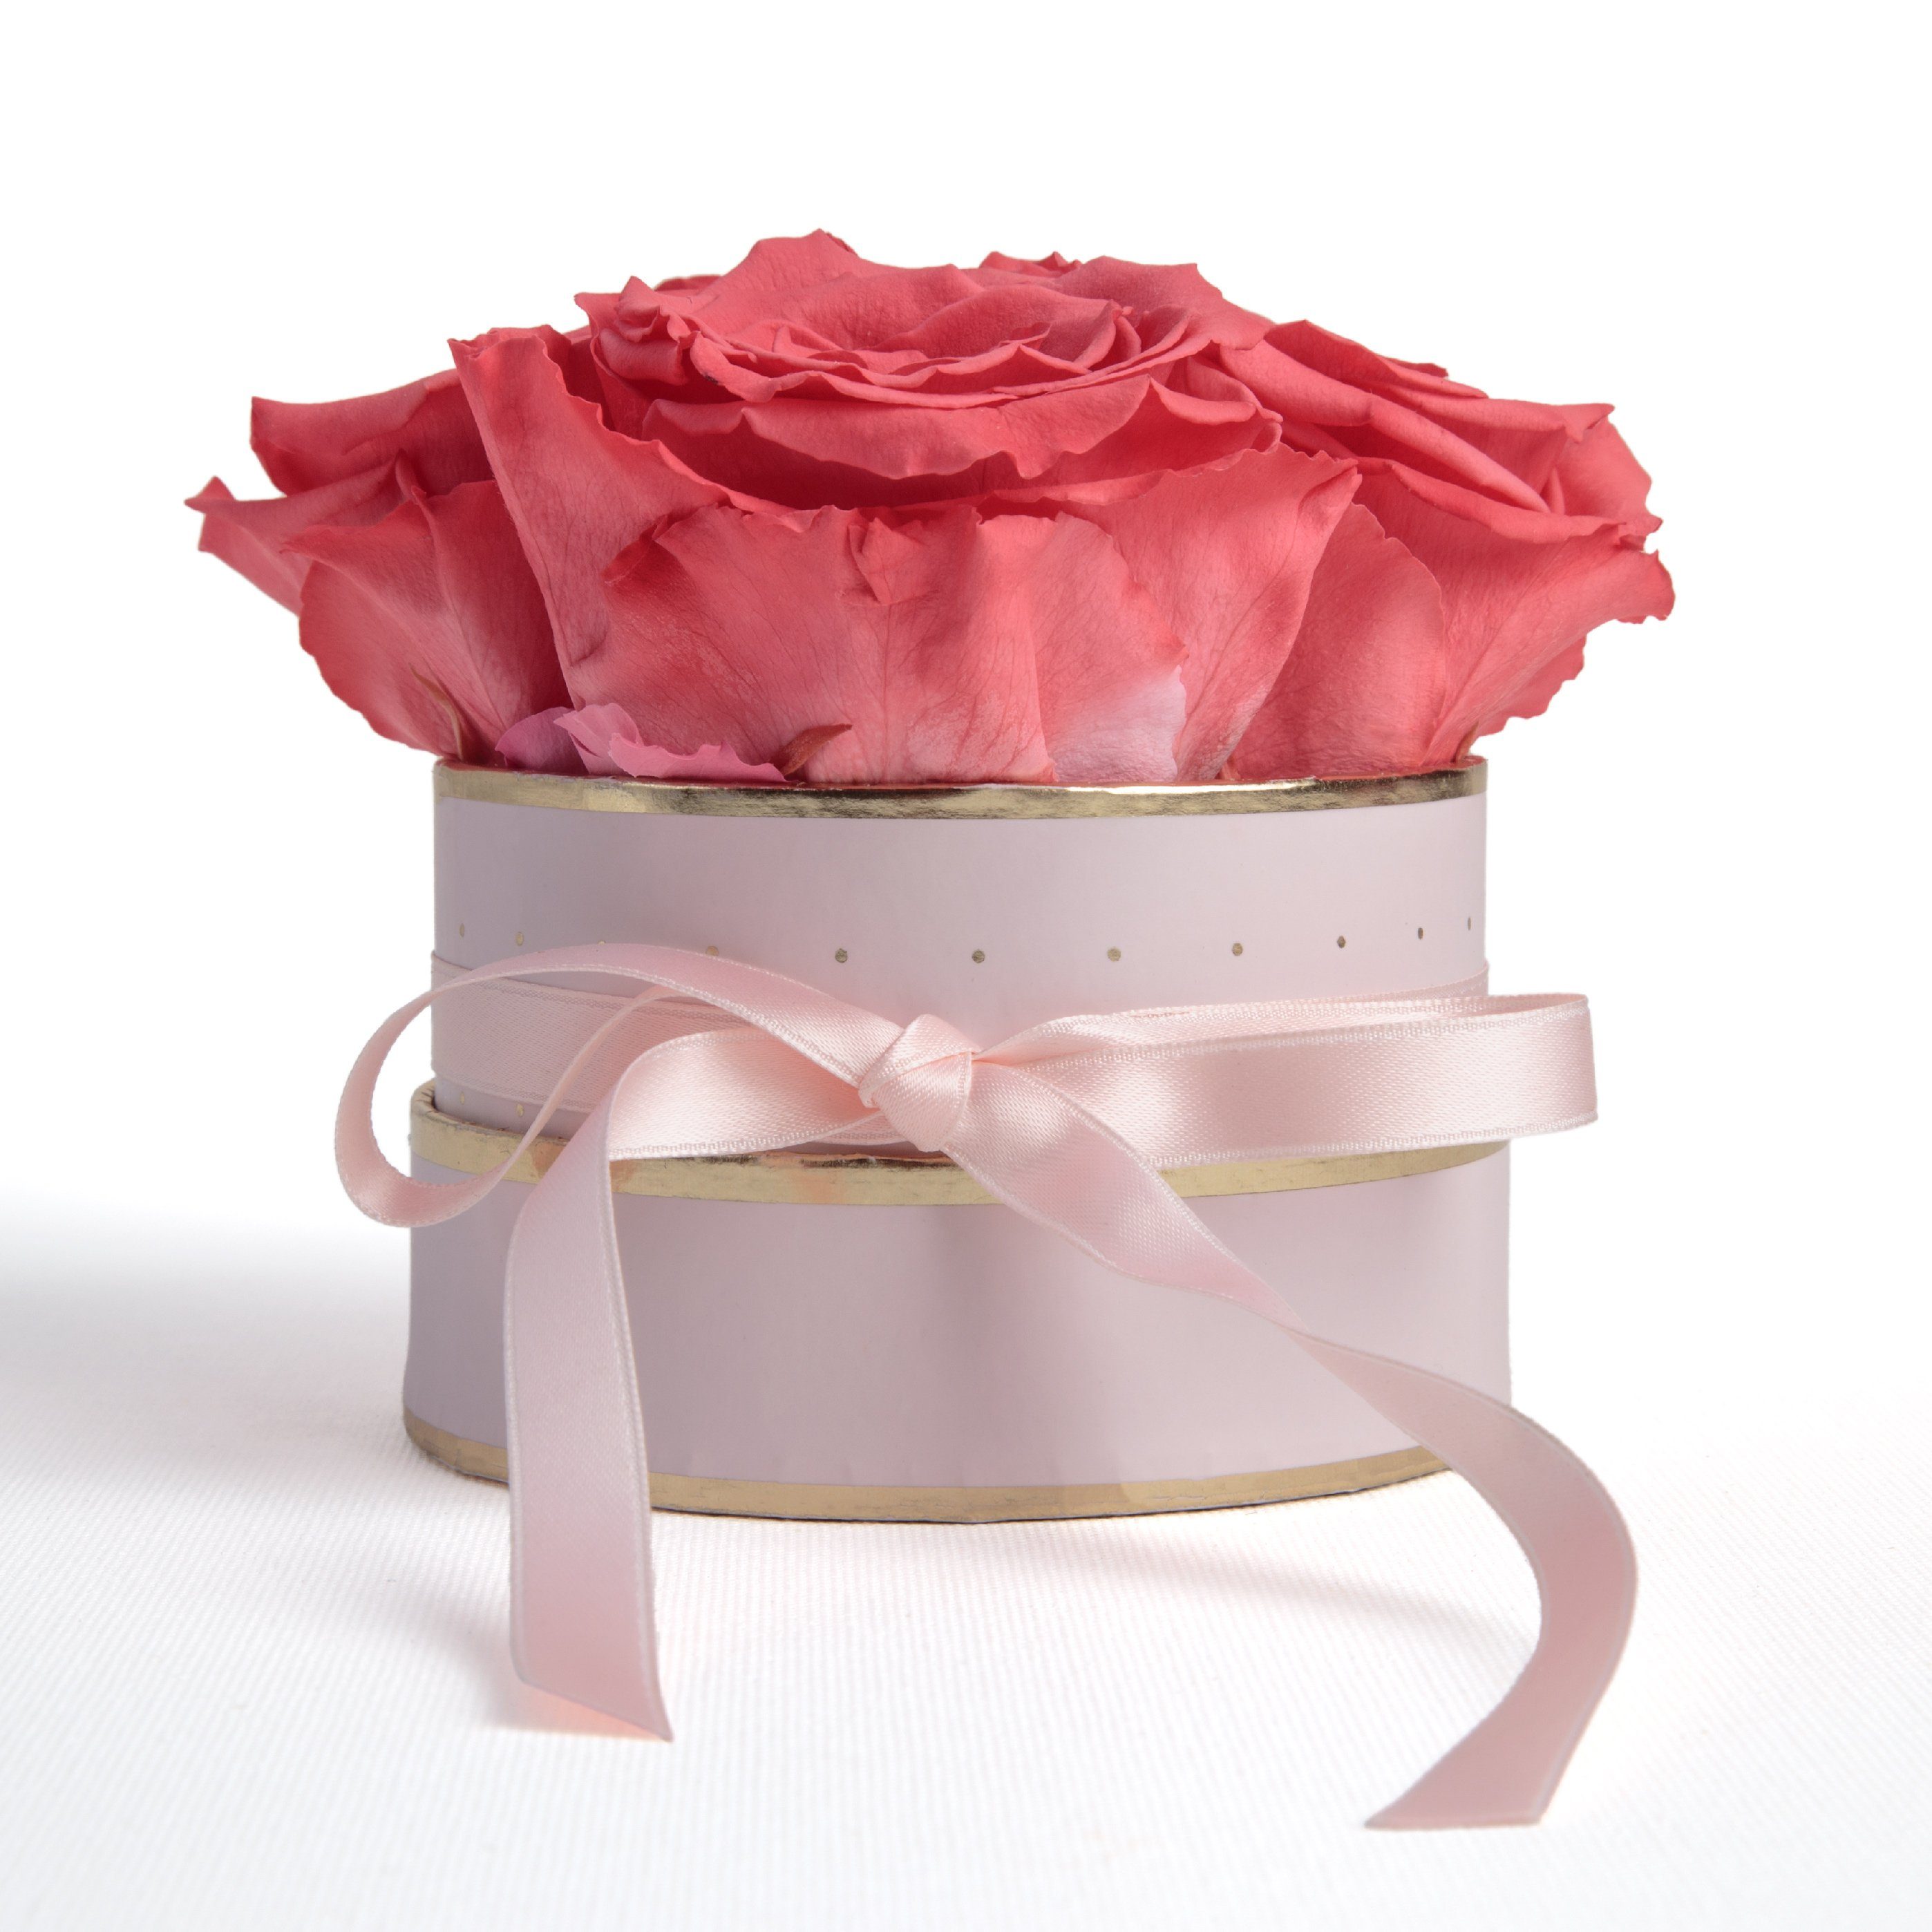 Kunstblume Infinity Rosenbox rosa rund 4 konservierte Rosen Geschenk für Frauen Rose, ROSEMARIE SCHULZ Heidelberg, Höhe 10 cm, echte konservierte Rosen Korall